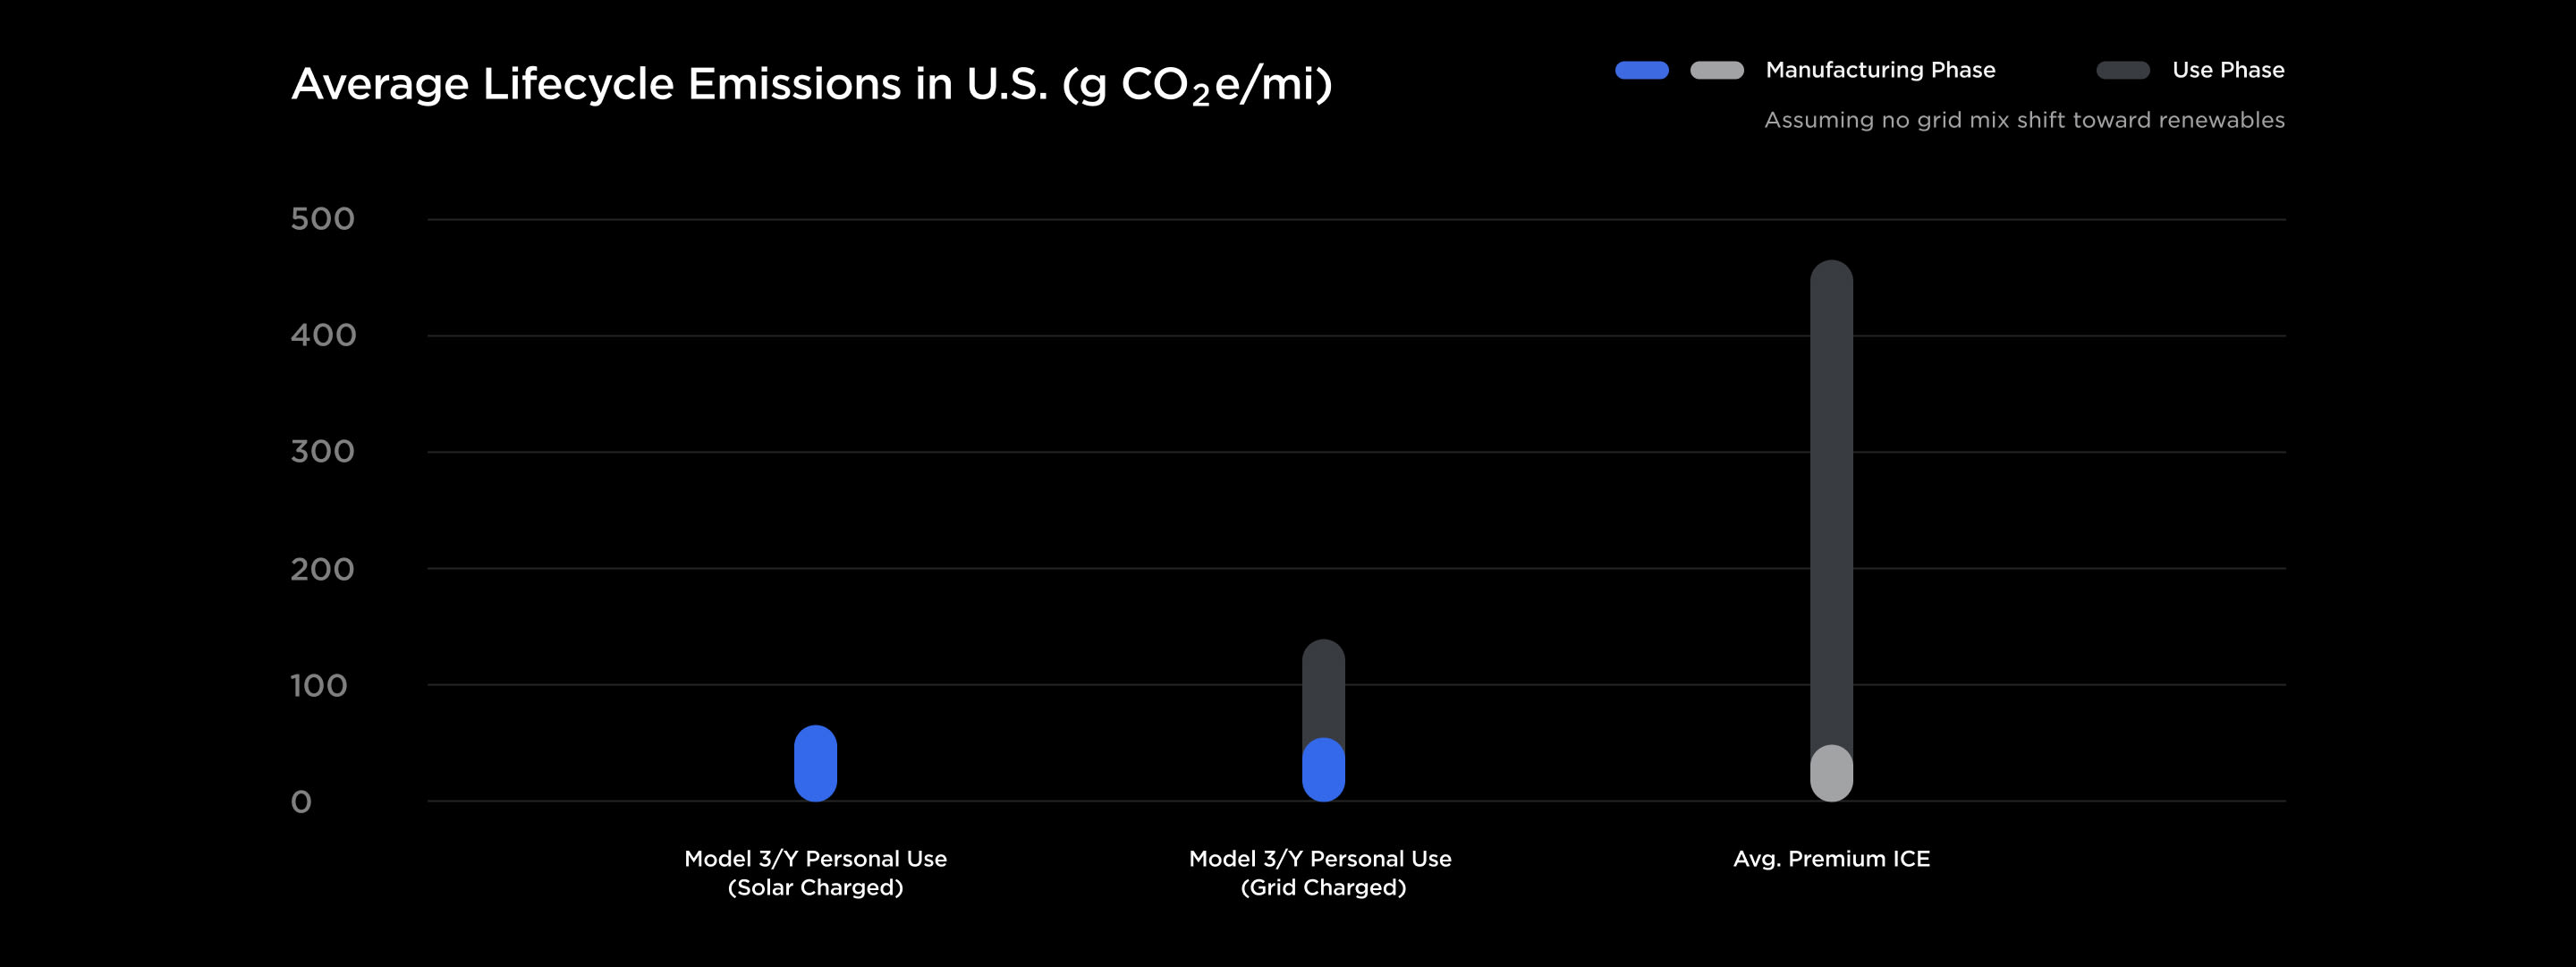 米国の平均ライフサイクル排出量